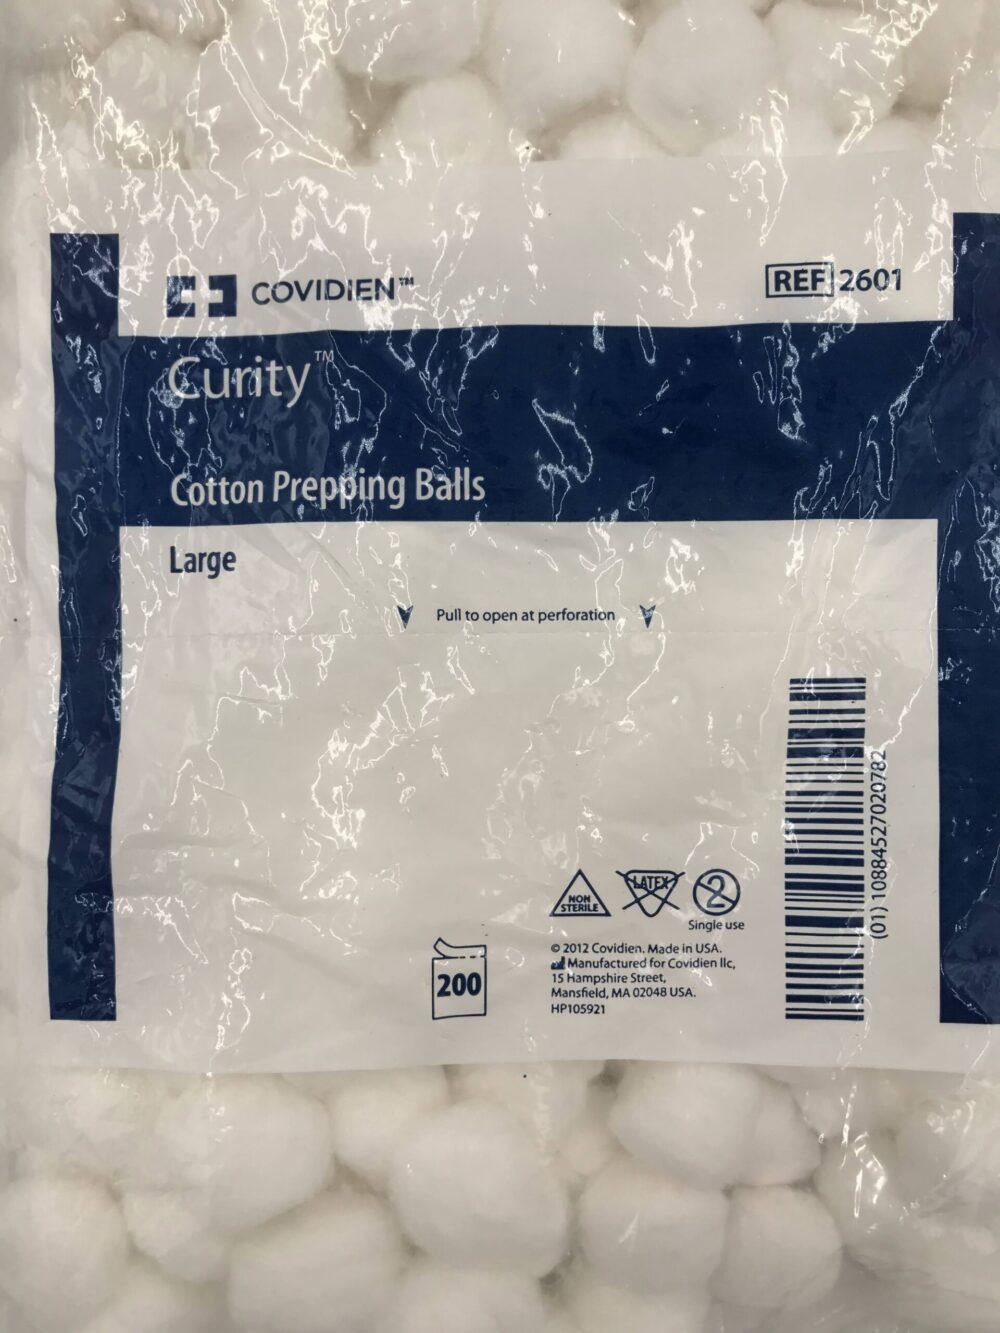 Non-Sterile Curity Cotton Balls